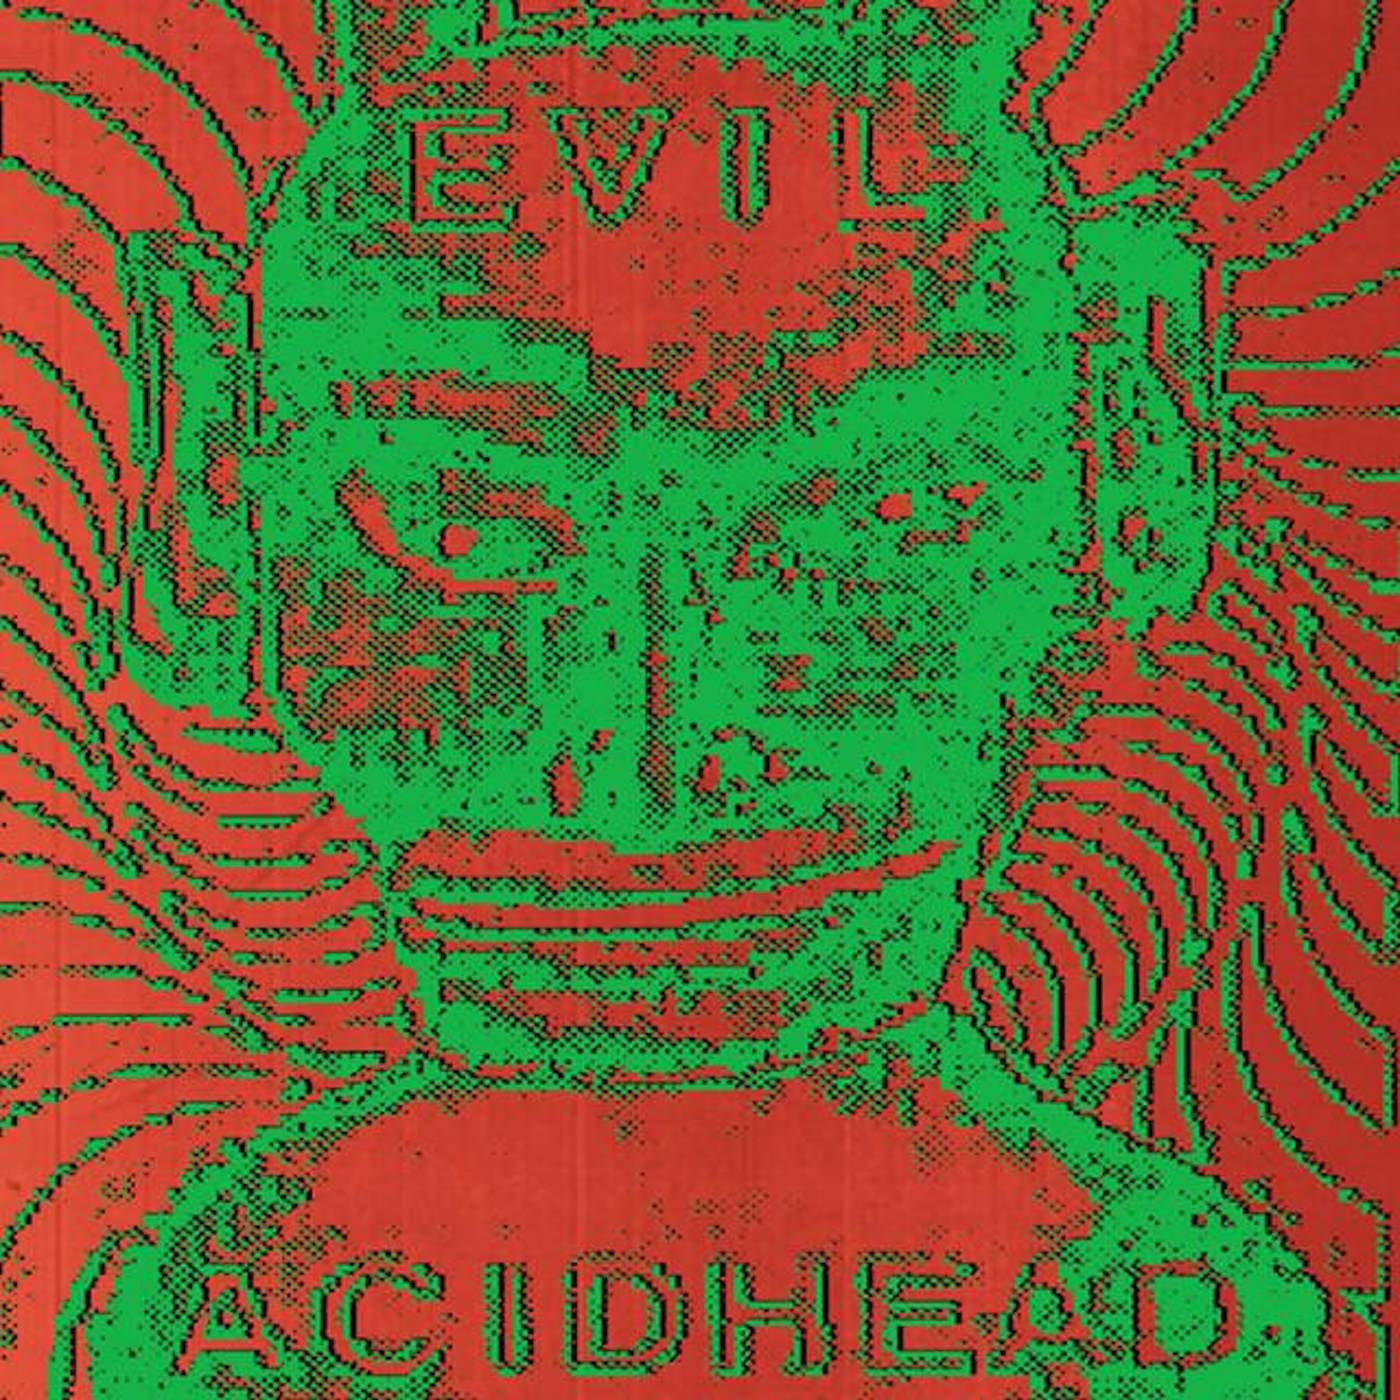 Evil Acidhead